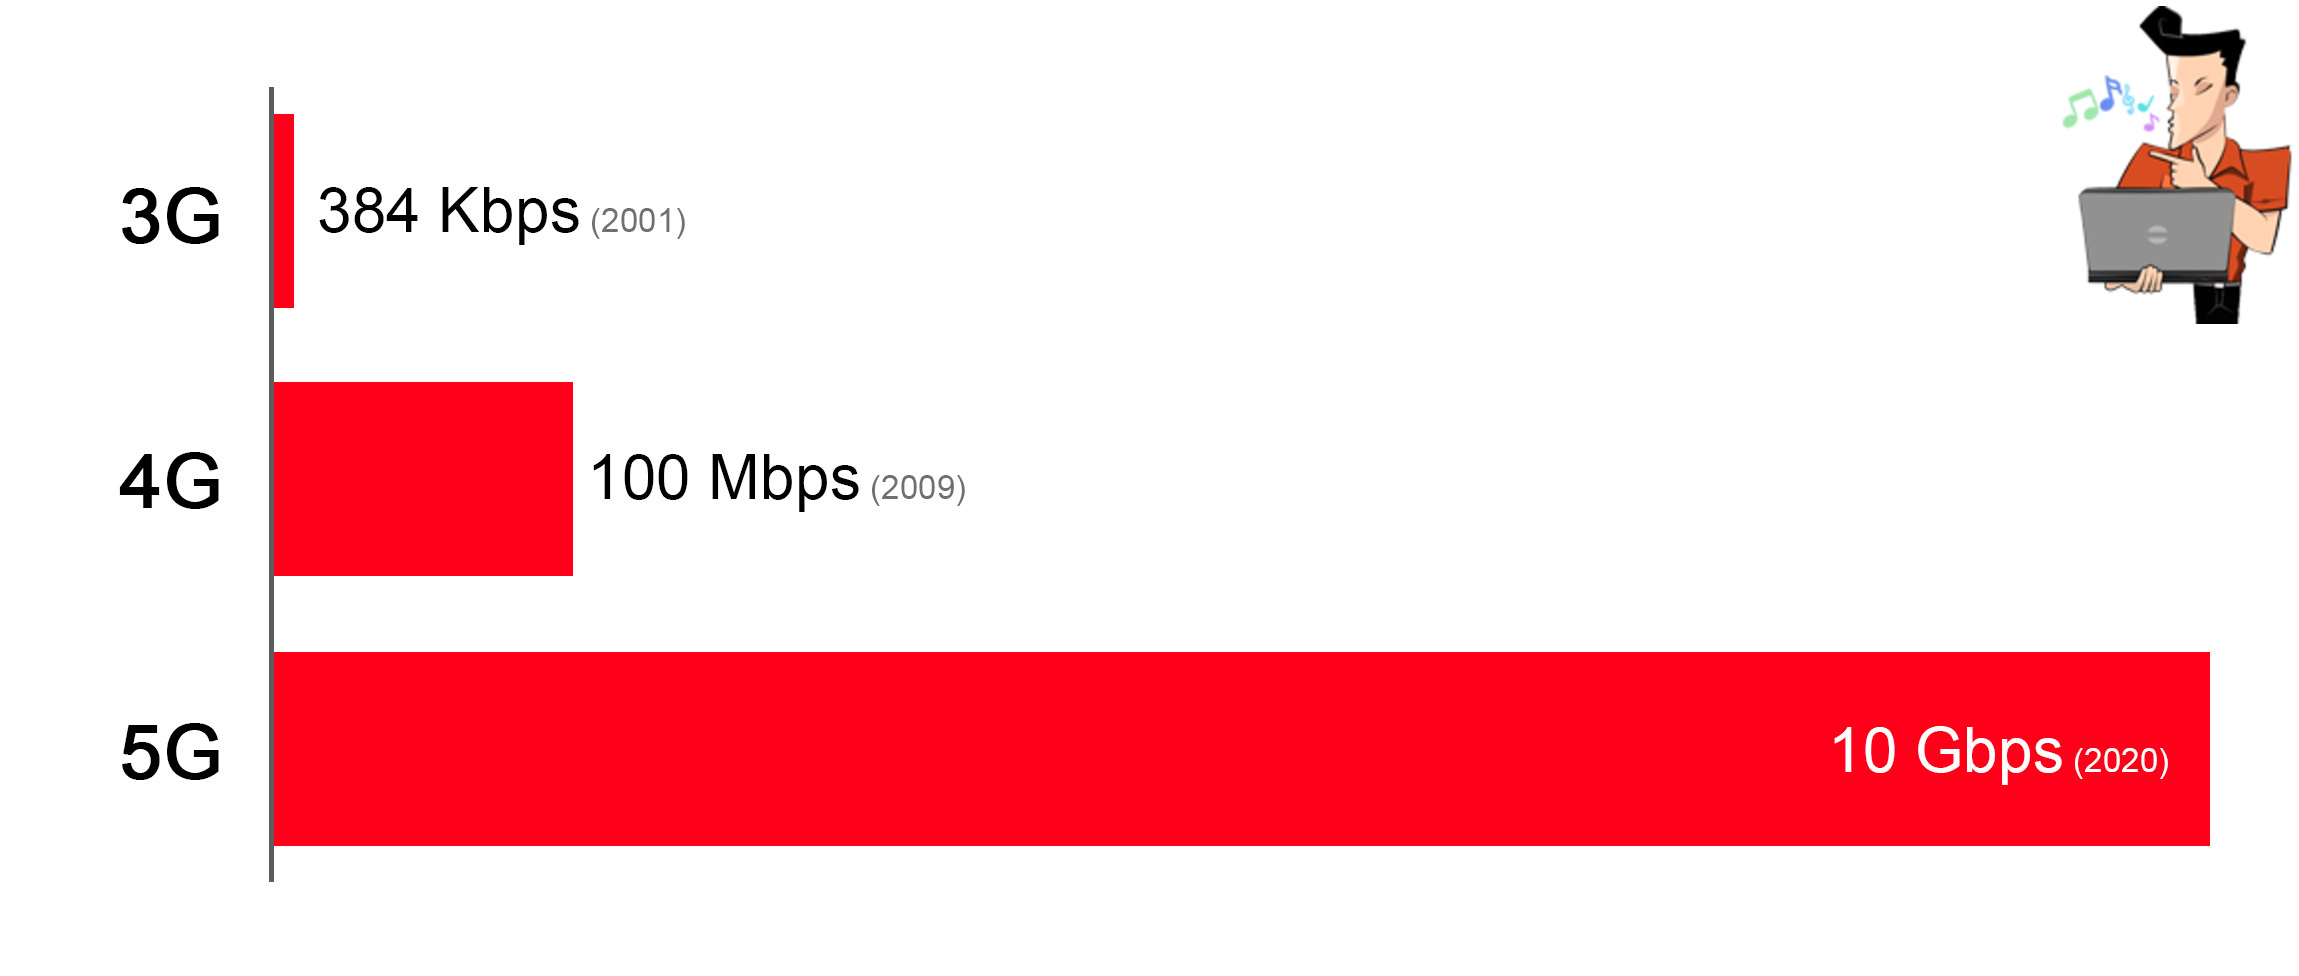 comparação entre 3G, 4G e 5G